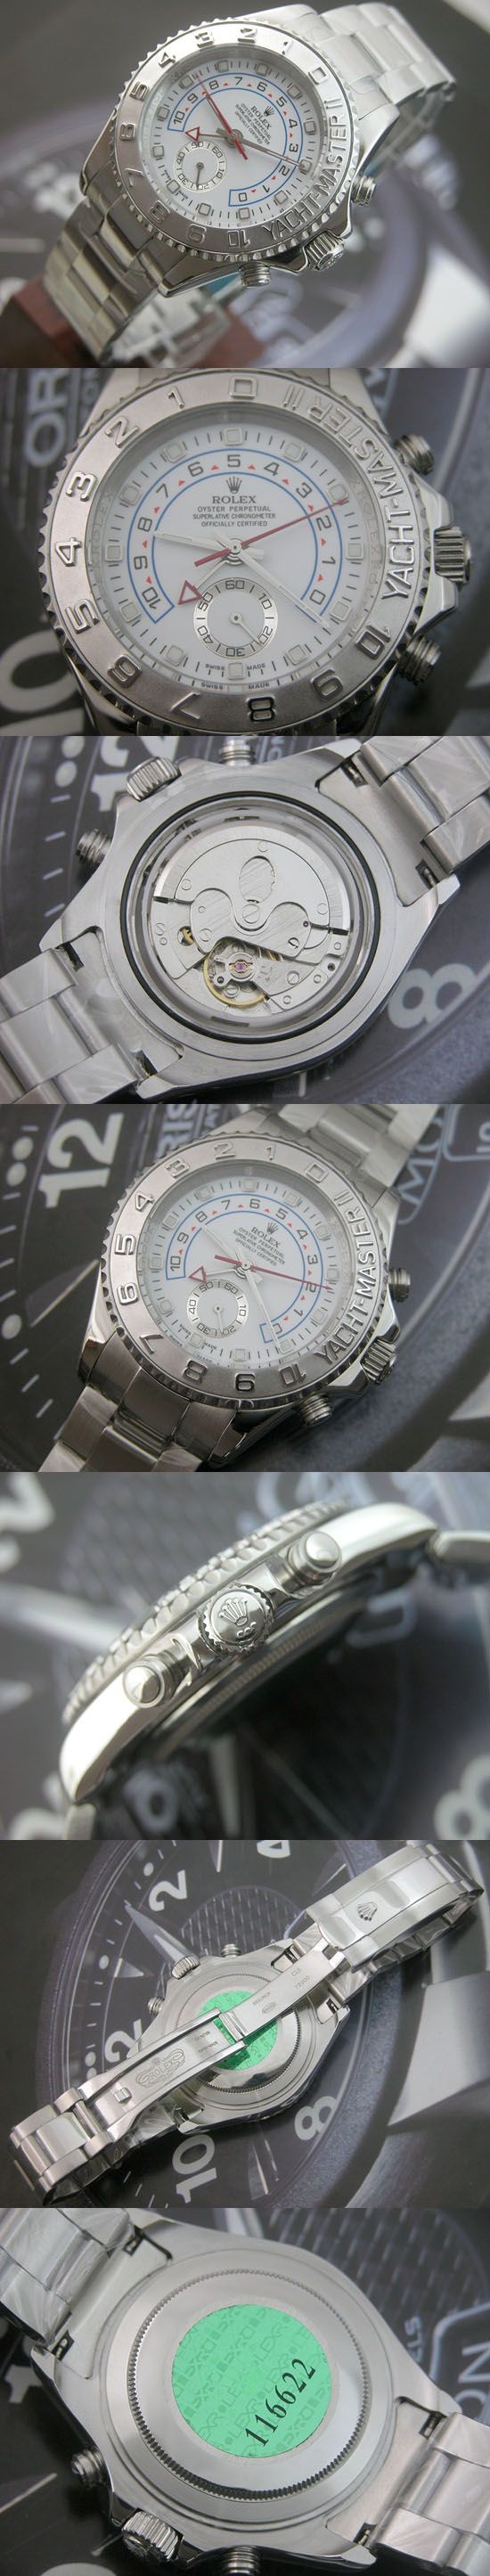 おしゃれなブランド時計がロレックス-ヨットマスターⅡ-ROLEX-116622-4-男性用を提供します.